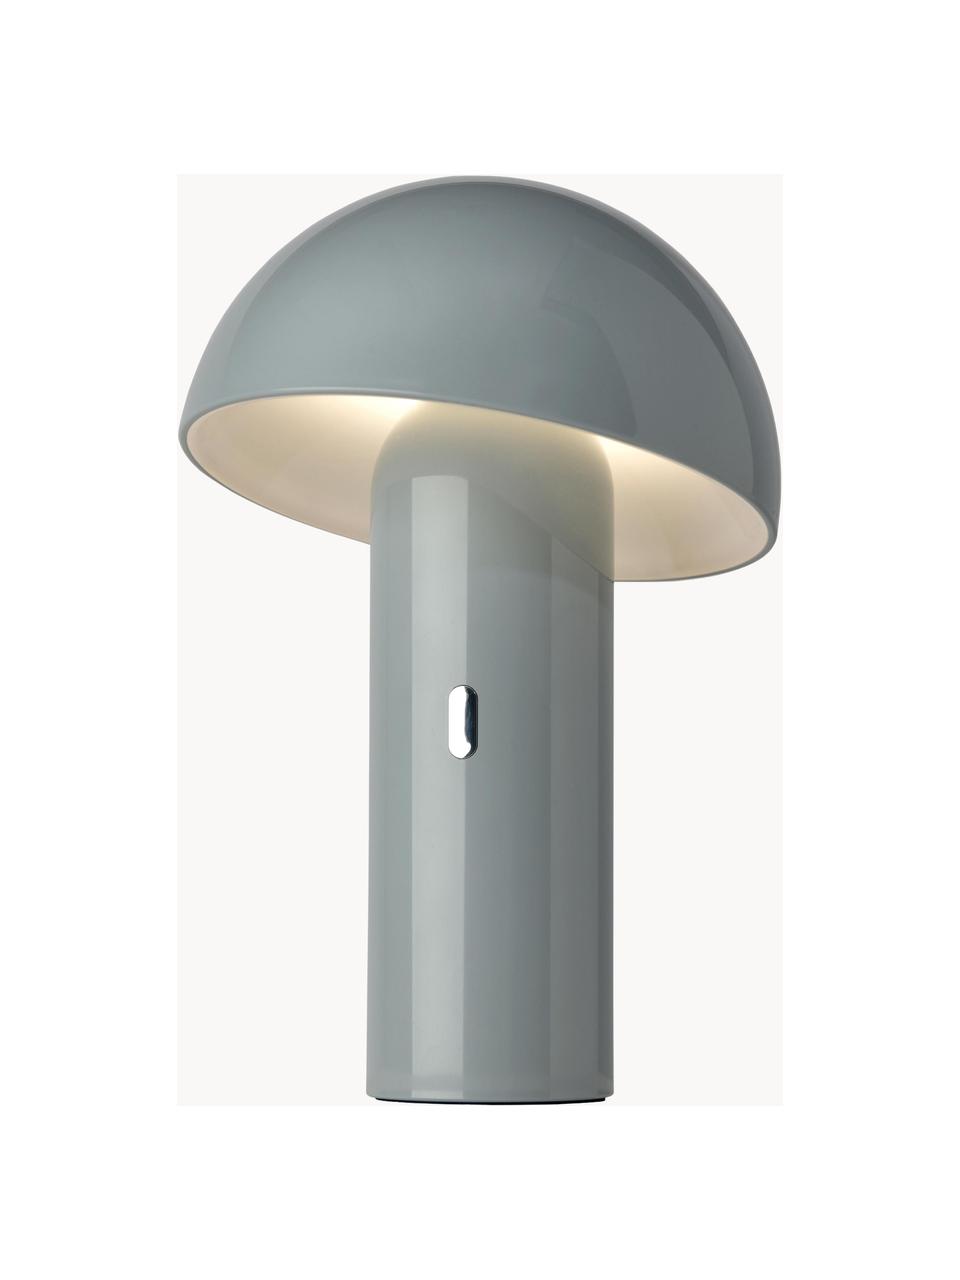 Kleine mobile LED-Tischlampe Svamp, dimmbar, Lampenschirm: Kunststoff, Lampenfuß: Kunststoff, Blaugrau, Ø 16 x H 25 cm